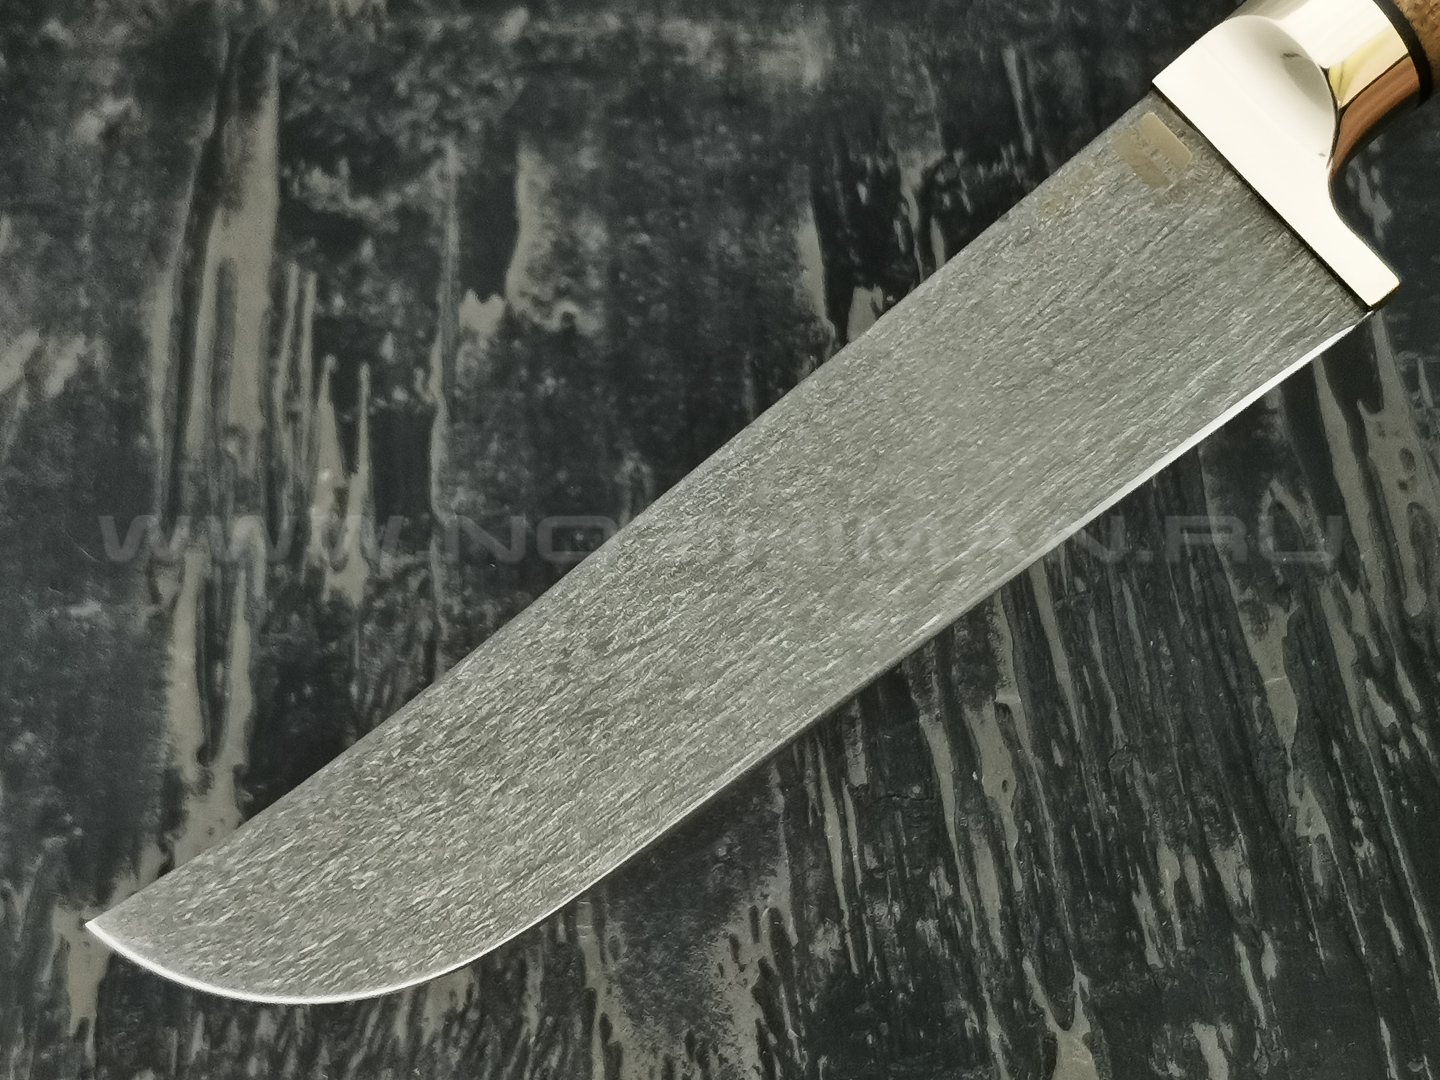 Нож "Пчак-Б" булатная сталь, рукоять дерево орех, мельхиор (Наследие)